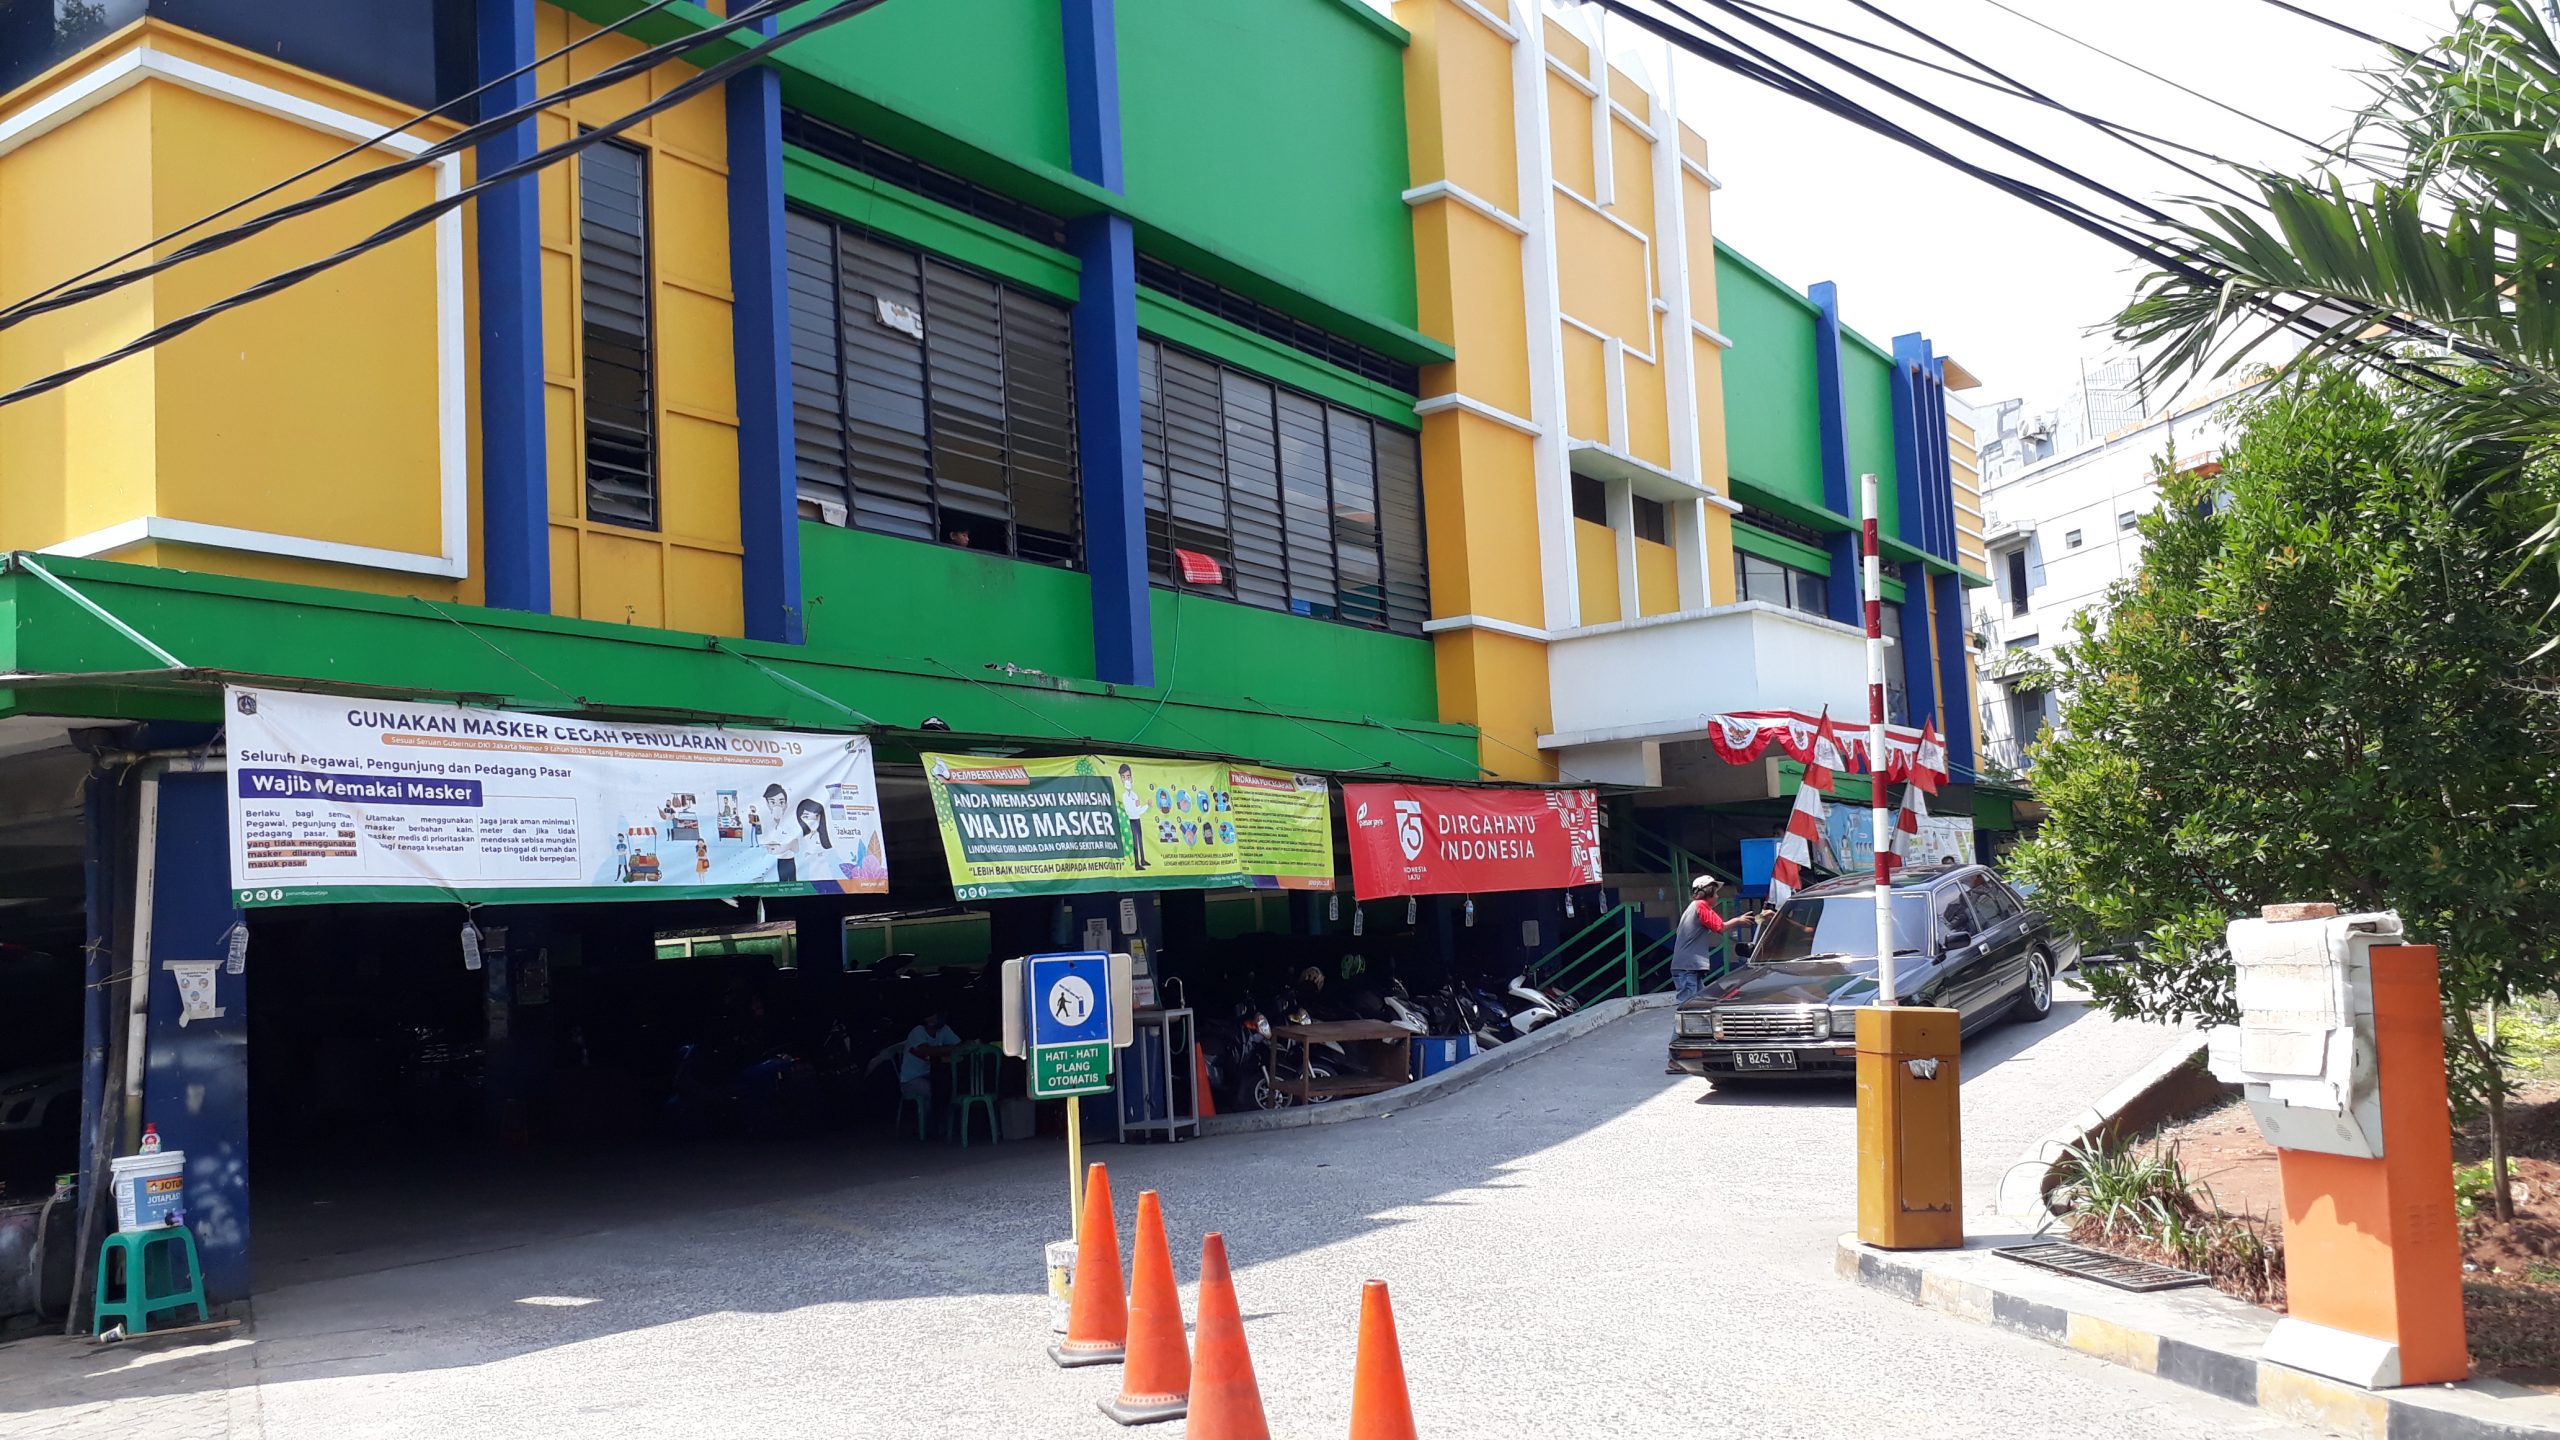 Pasar Otomotif Duren Sawit Pusat Onderdil dan Asesoris Murah Lengkap